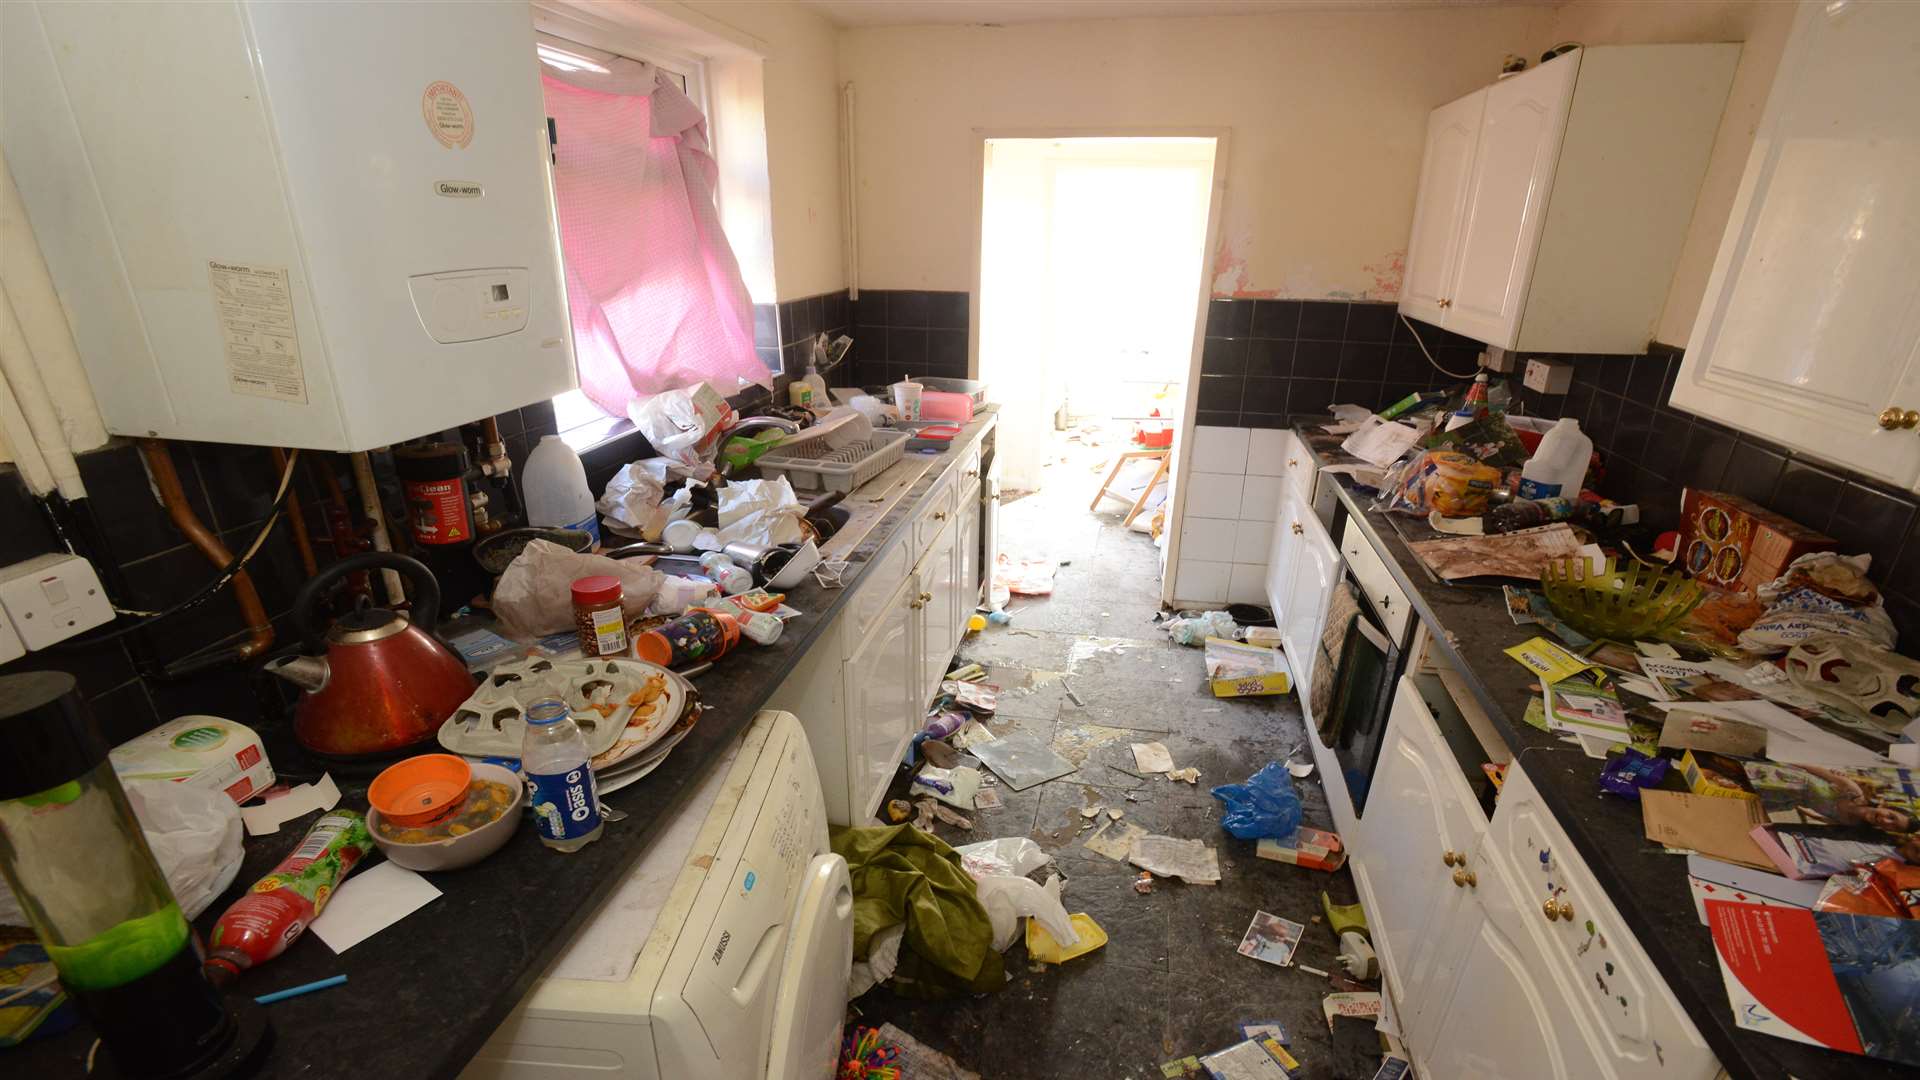 The devastated kitchen